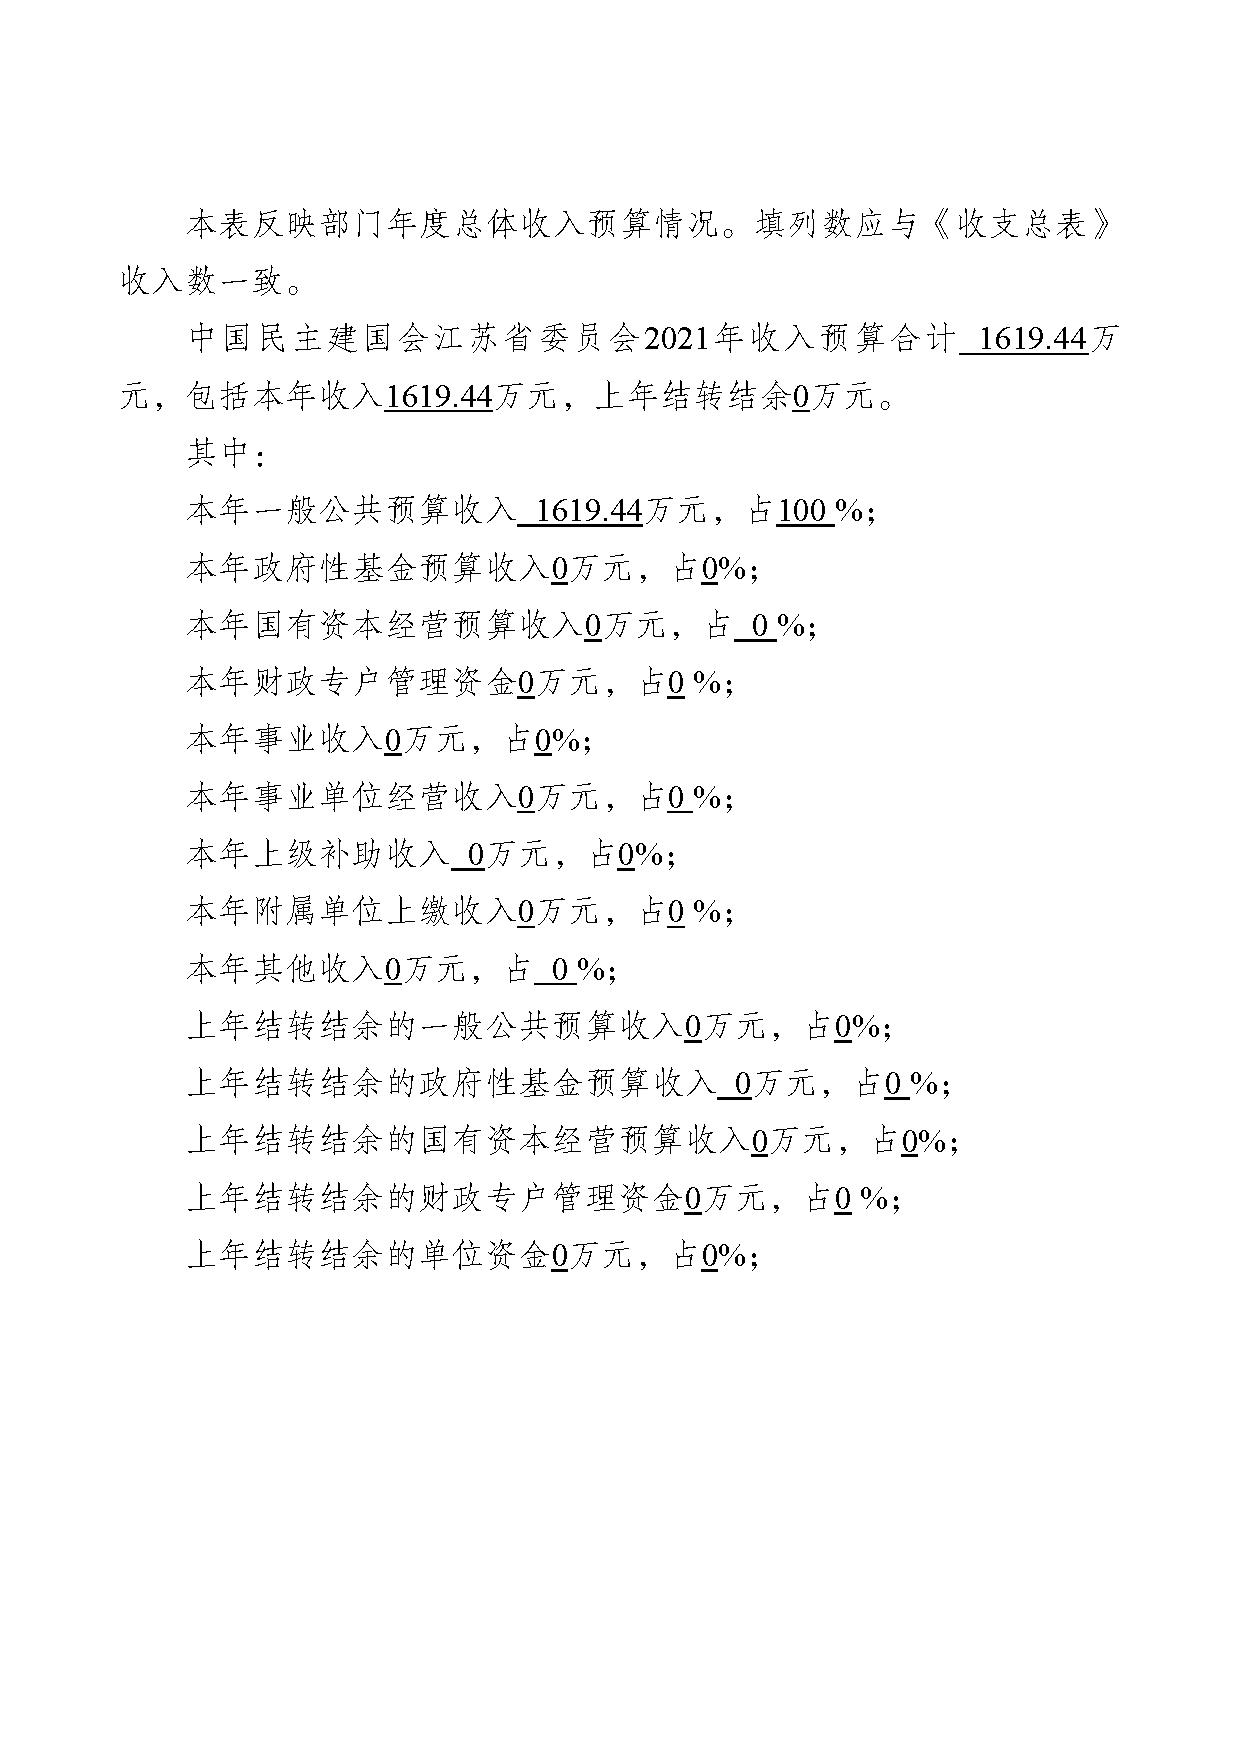 2021年度中国民主建国会江苏省委员会部门预算公开-23.jpg